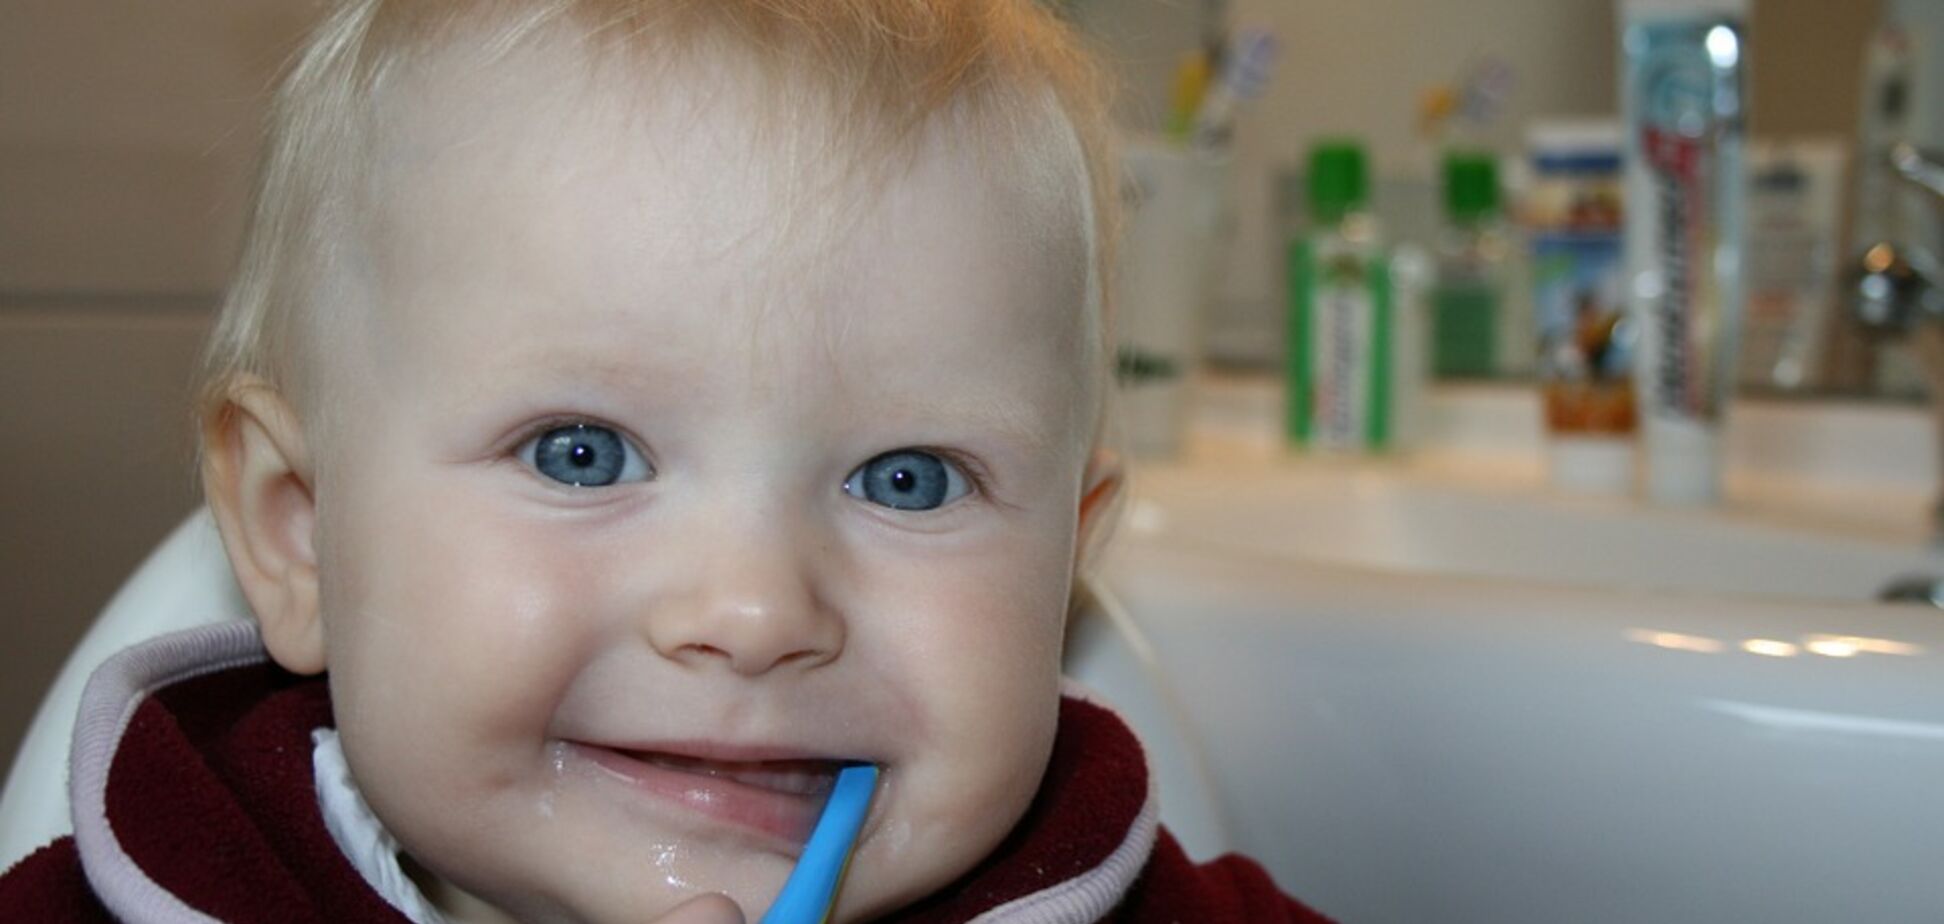 Комаровский подсказал, как научить ребенка чистить зубы